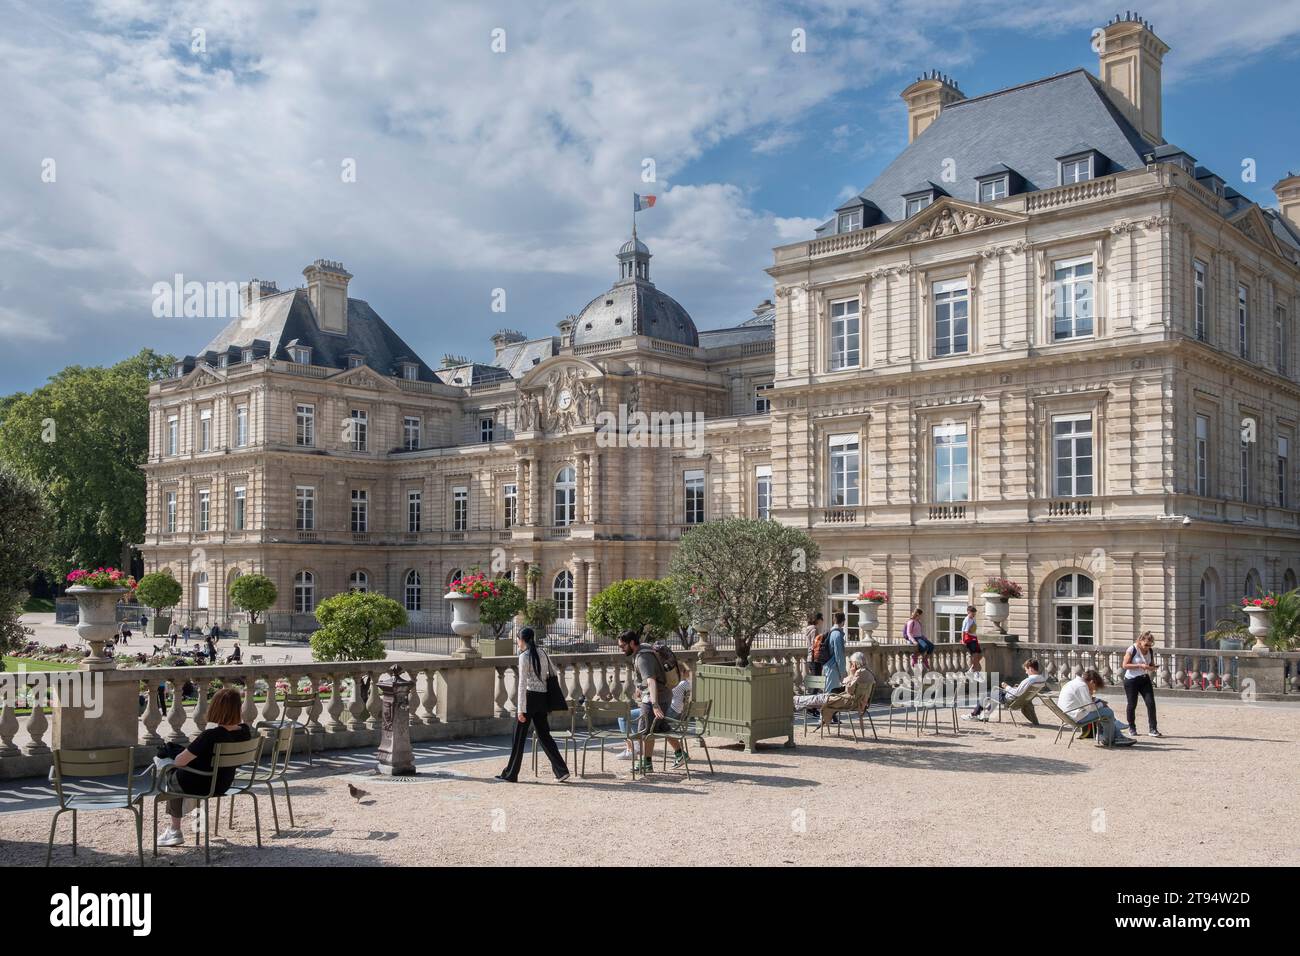 Le Palais du Luxembourg est un château du 6e arrondissement de Paris, entouré d'un parc baroque original du début du 17e siècle Banque D'Images